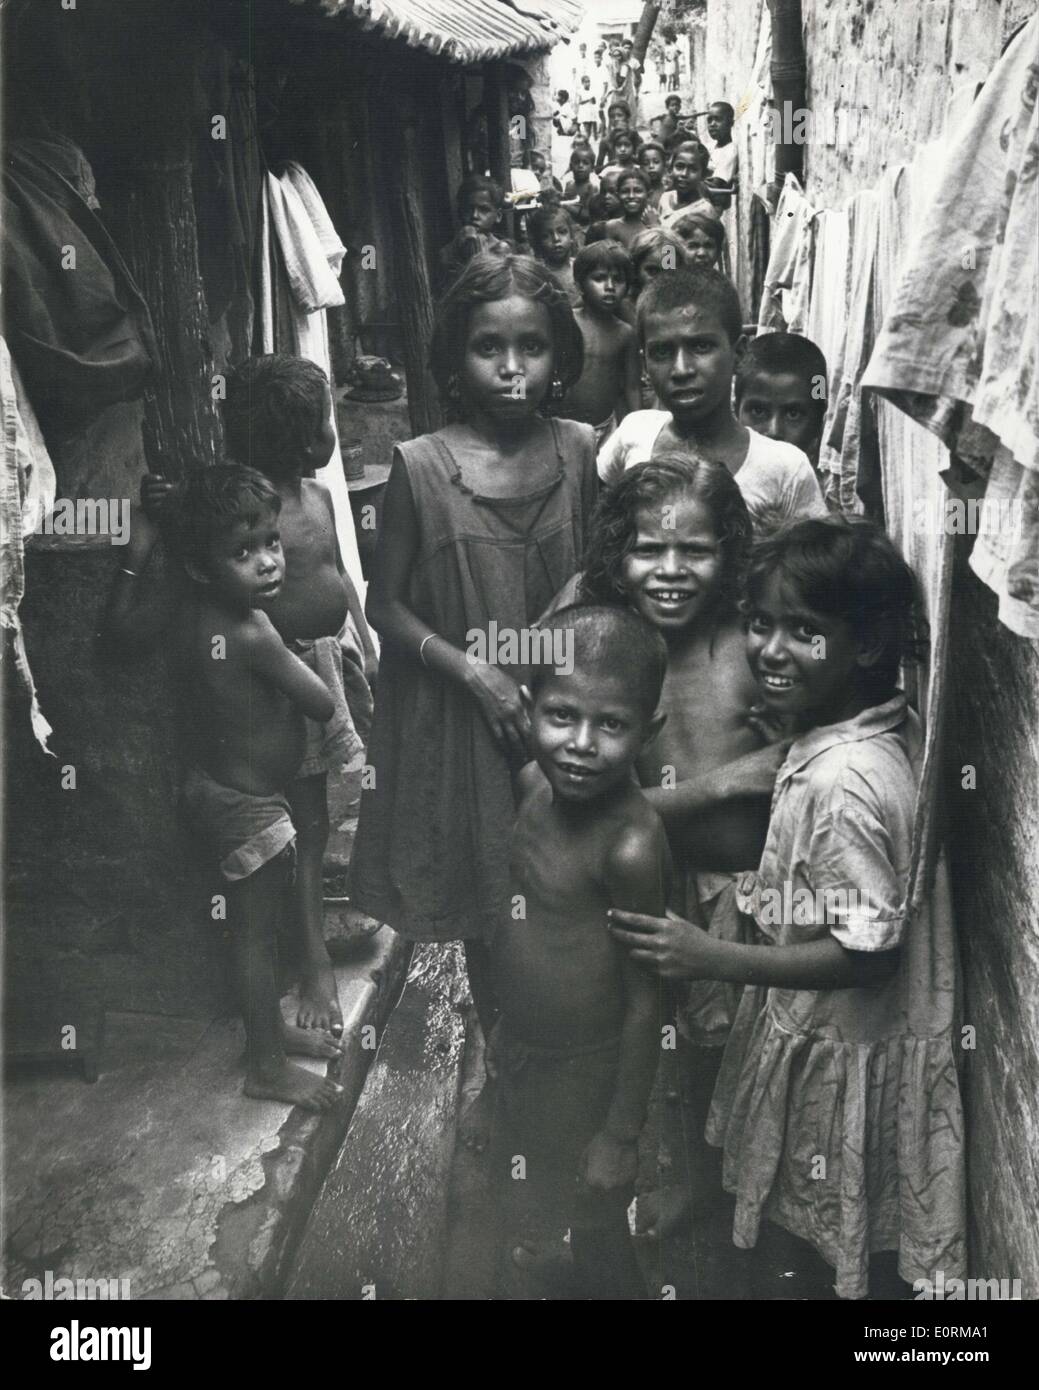 Jan 1, 1960 - Calcutta: i giovani non sembrano troppo infelice nonostante la miseria dei loro dintorni. Foto Stock